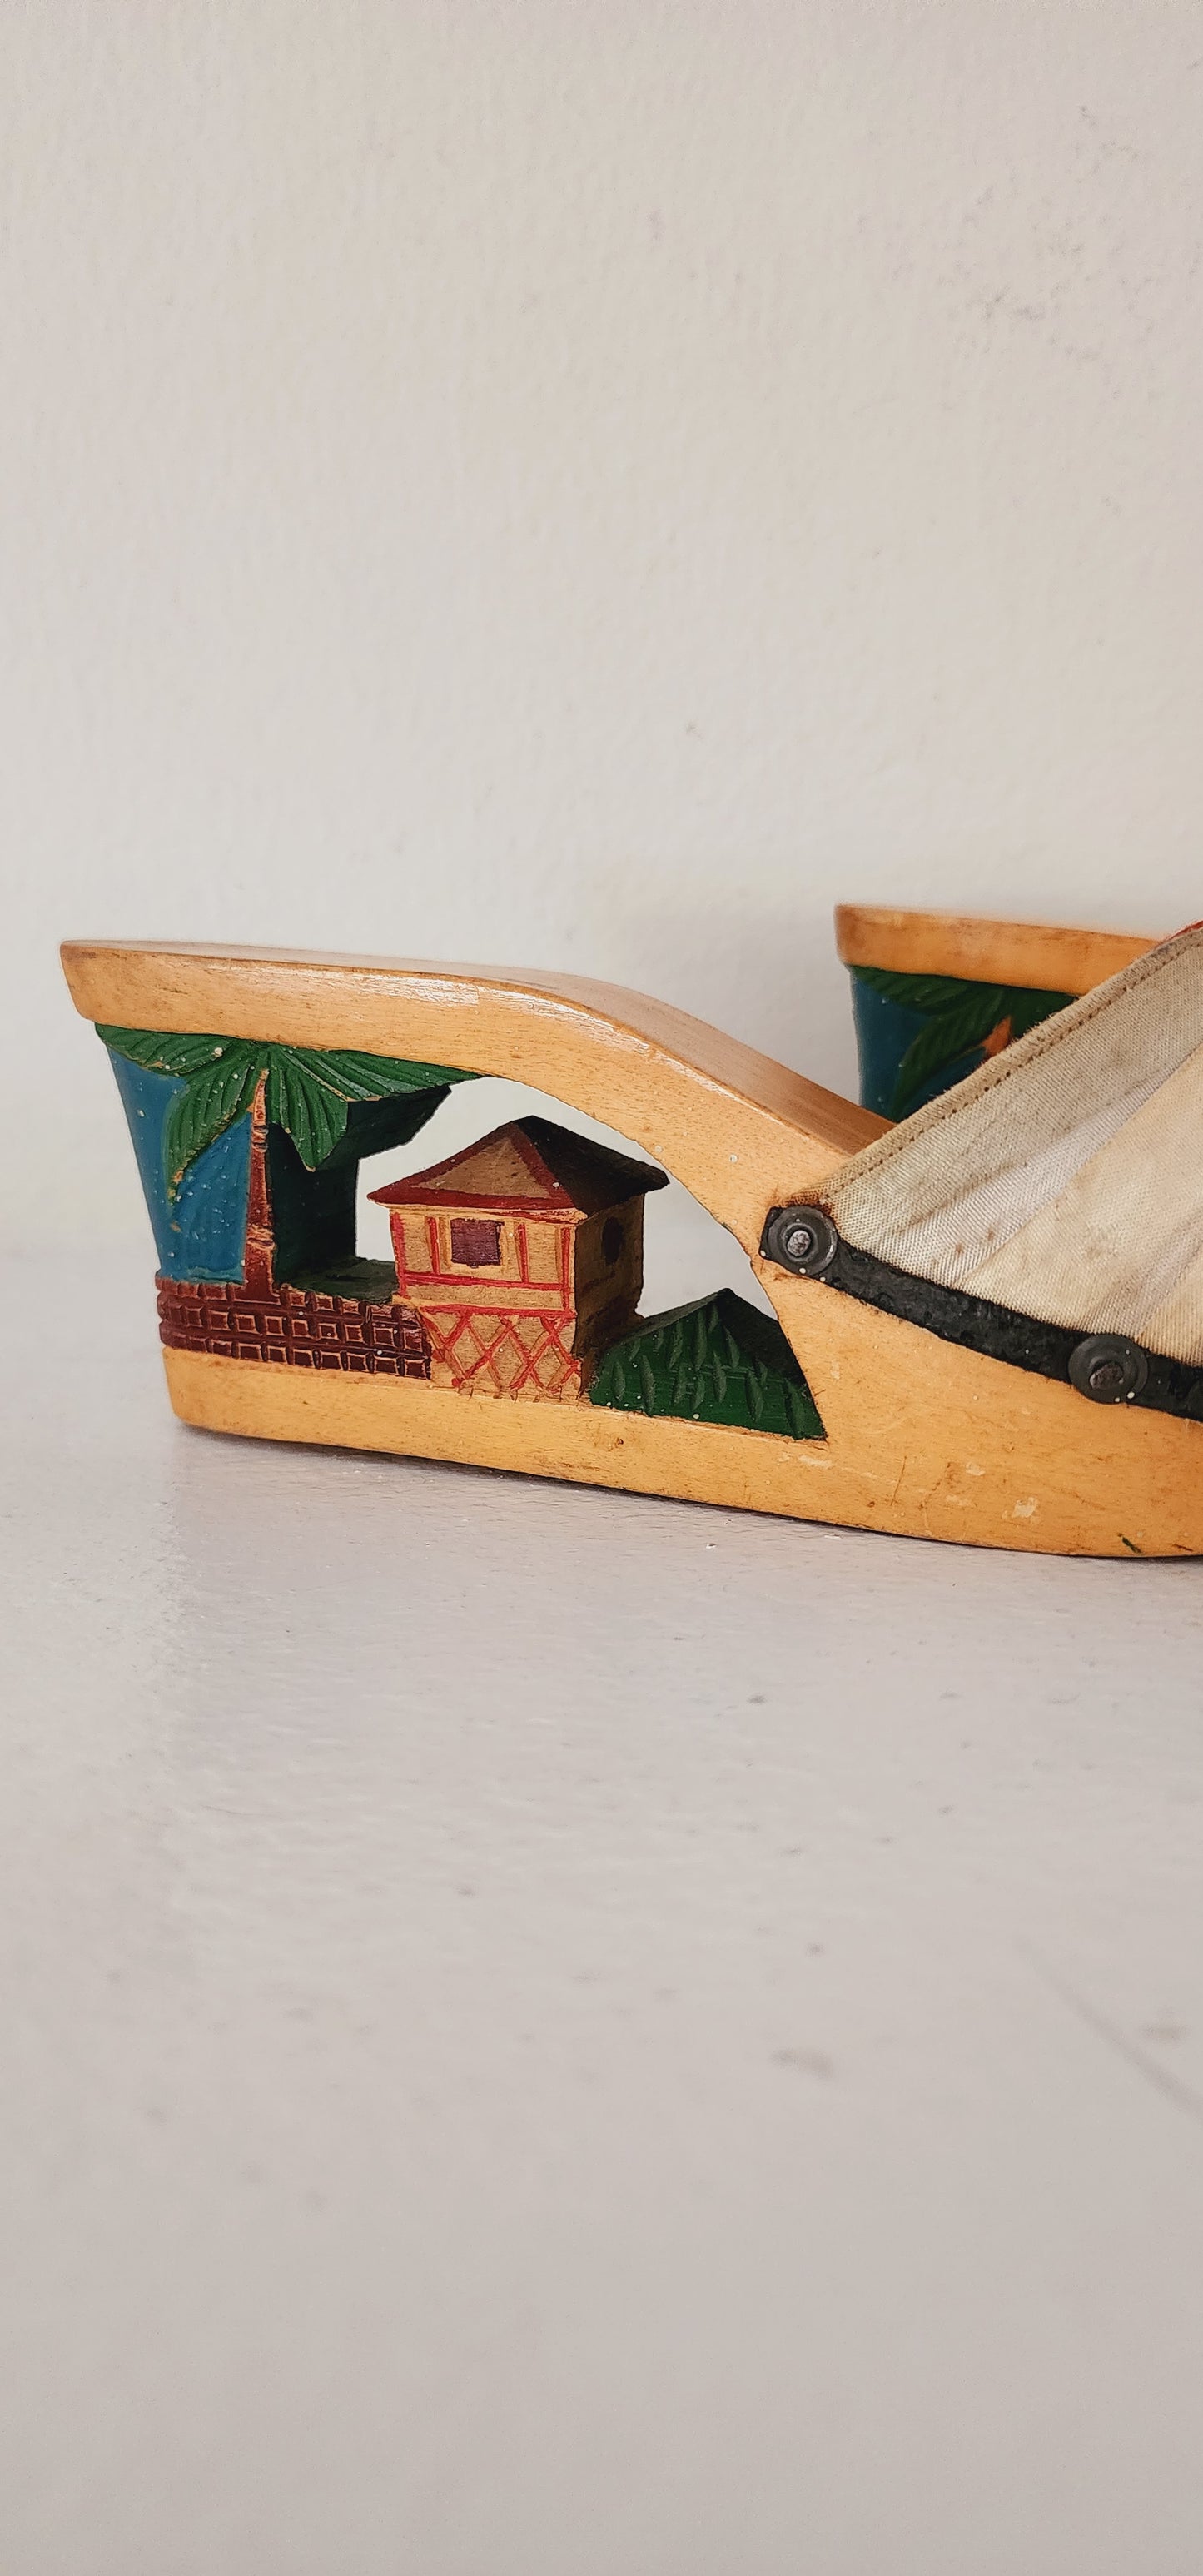 1940s Carved Wooden Platform Shoes Tiki Village Size 6